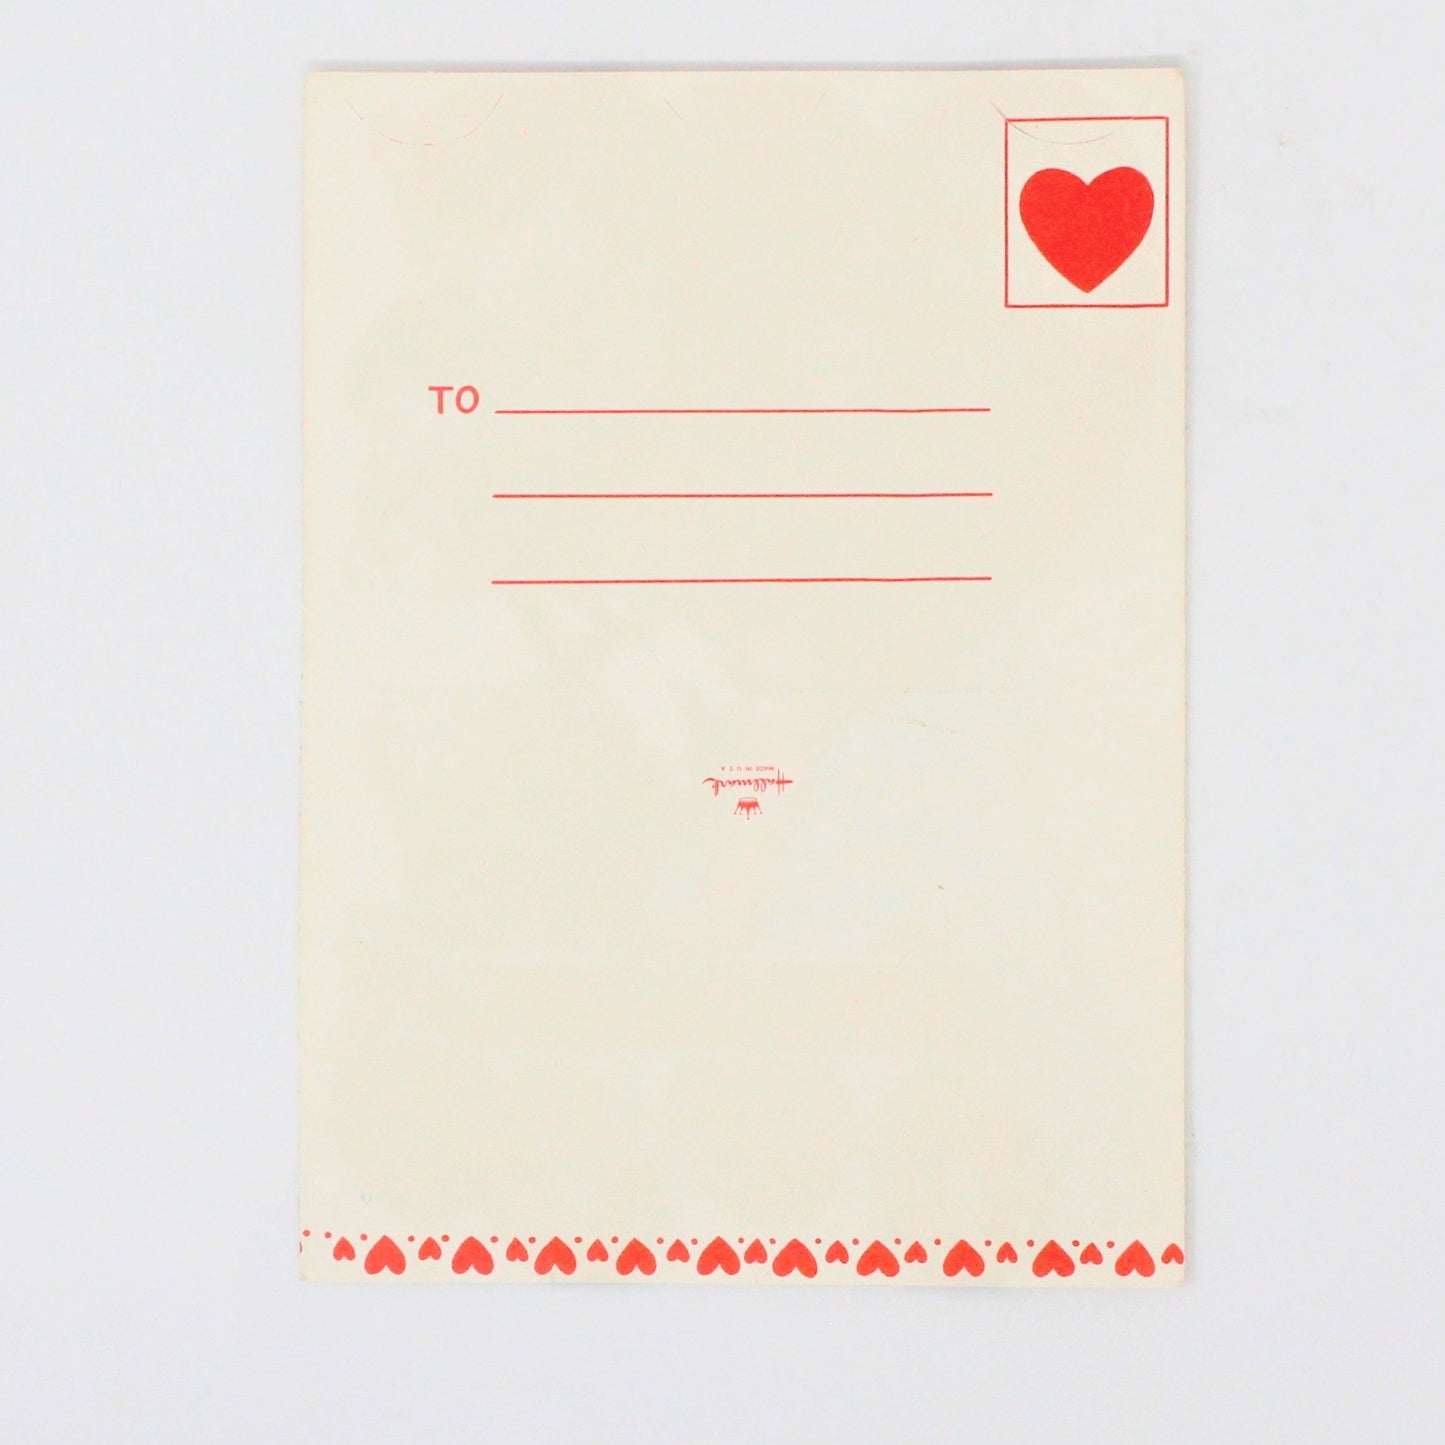 Greeting Card / Valentine Mini, Boy & Dog on Red Wagon, Hallmark Self Mailer, Unused, Vintage